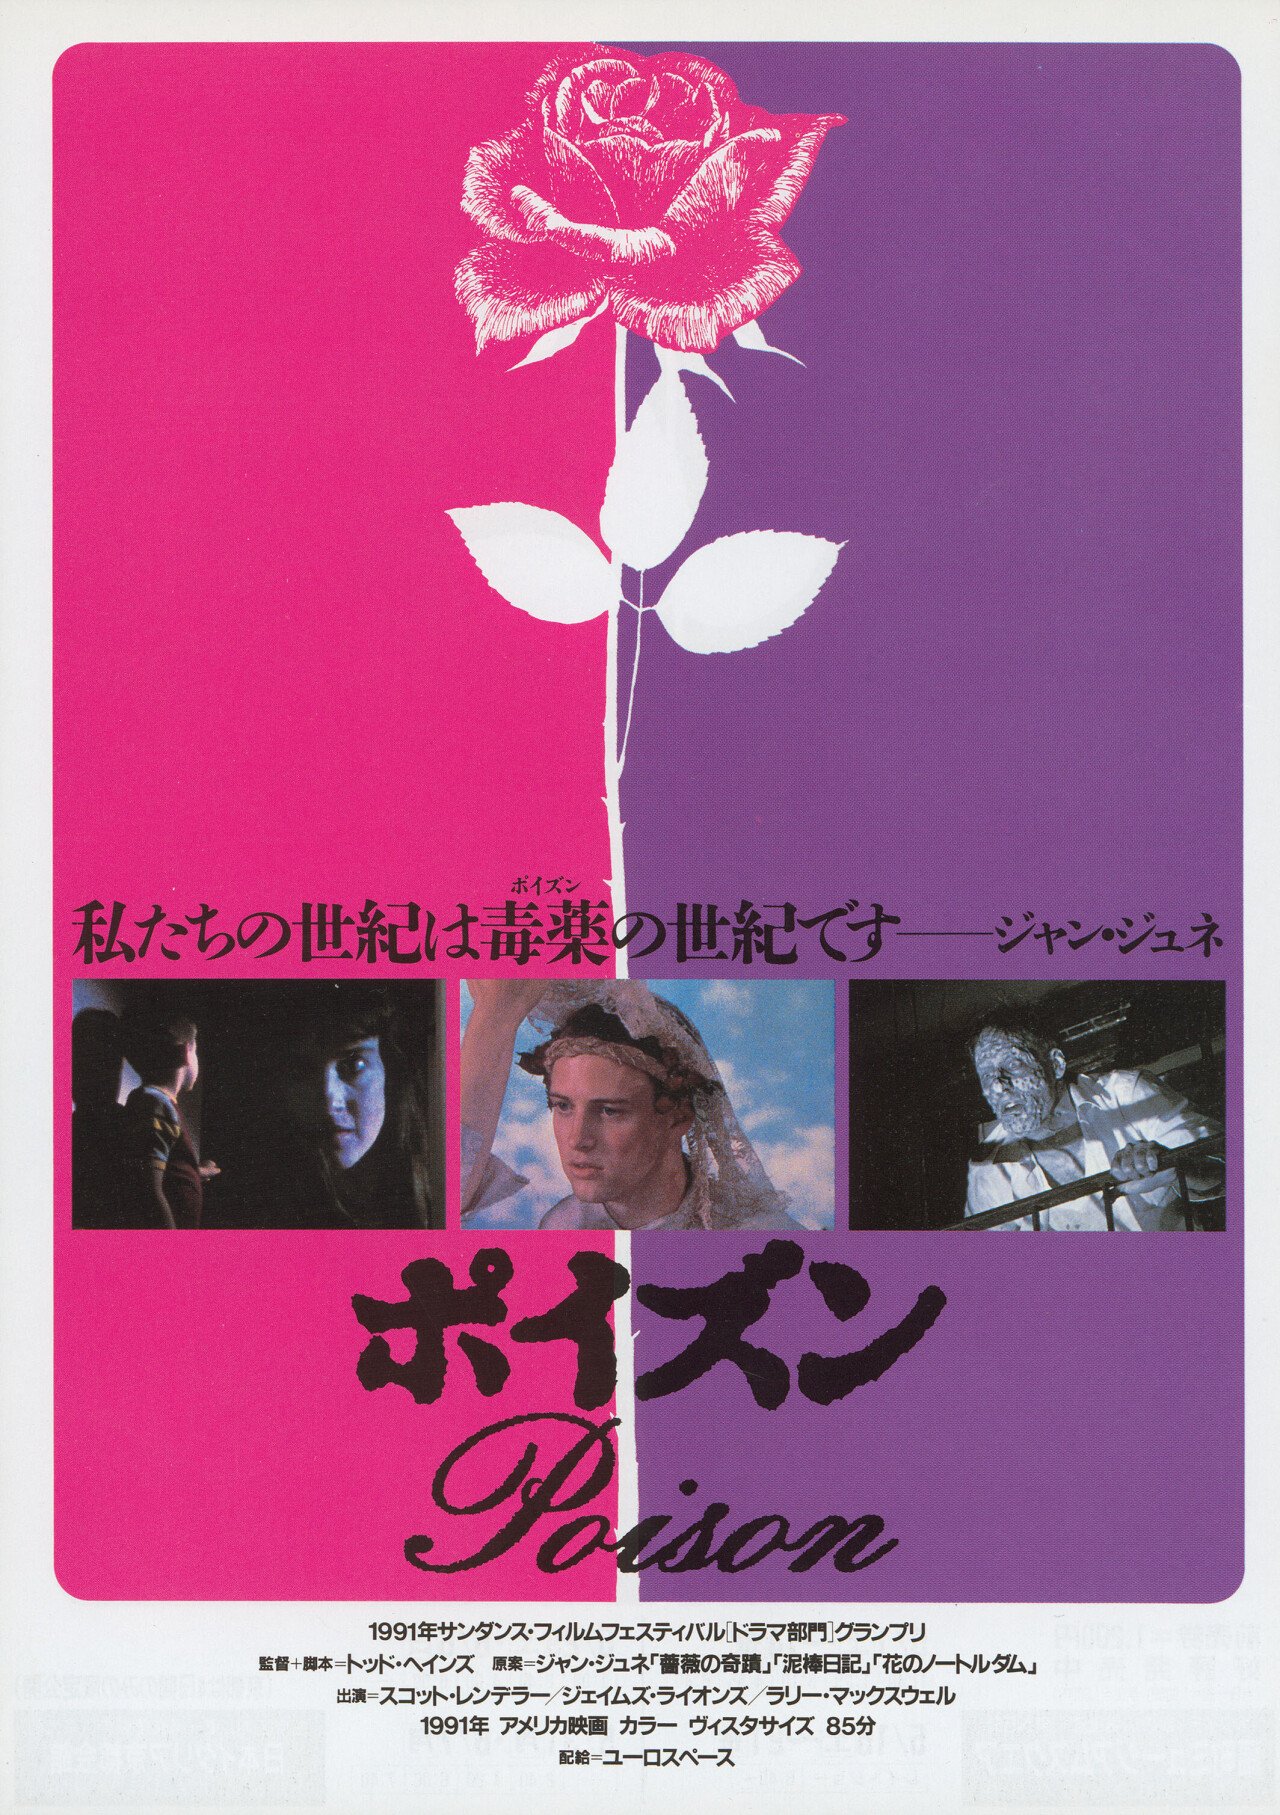 Отрава (Poison, 1991), режиссёр Тодд Хейнс, японский постер к фильму (ужасы, 1991 год)